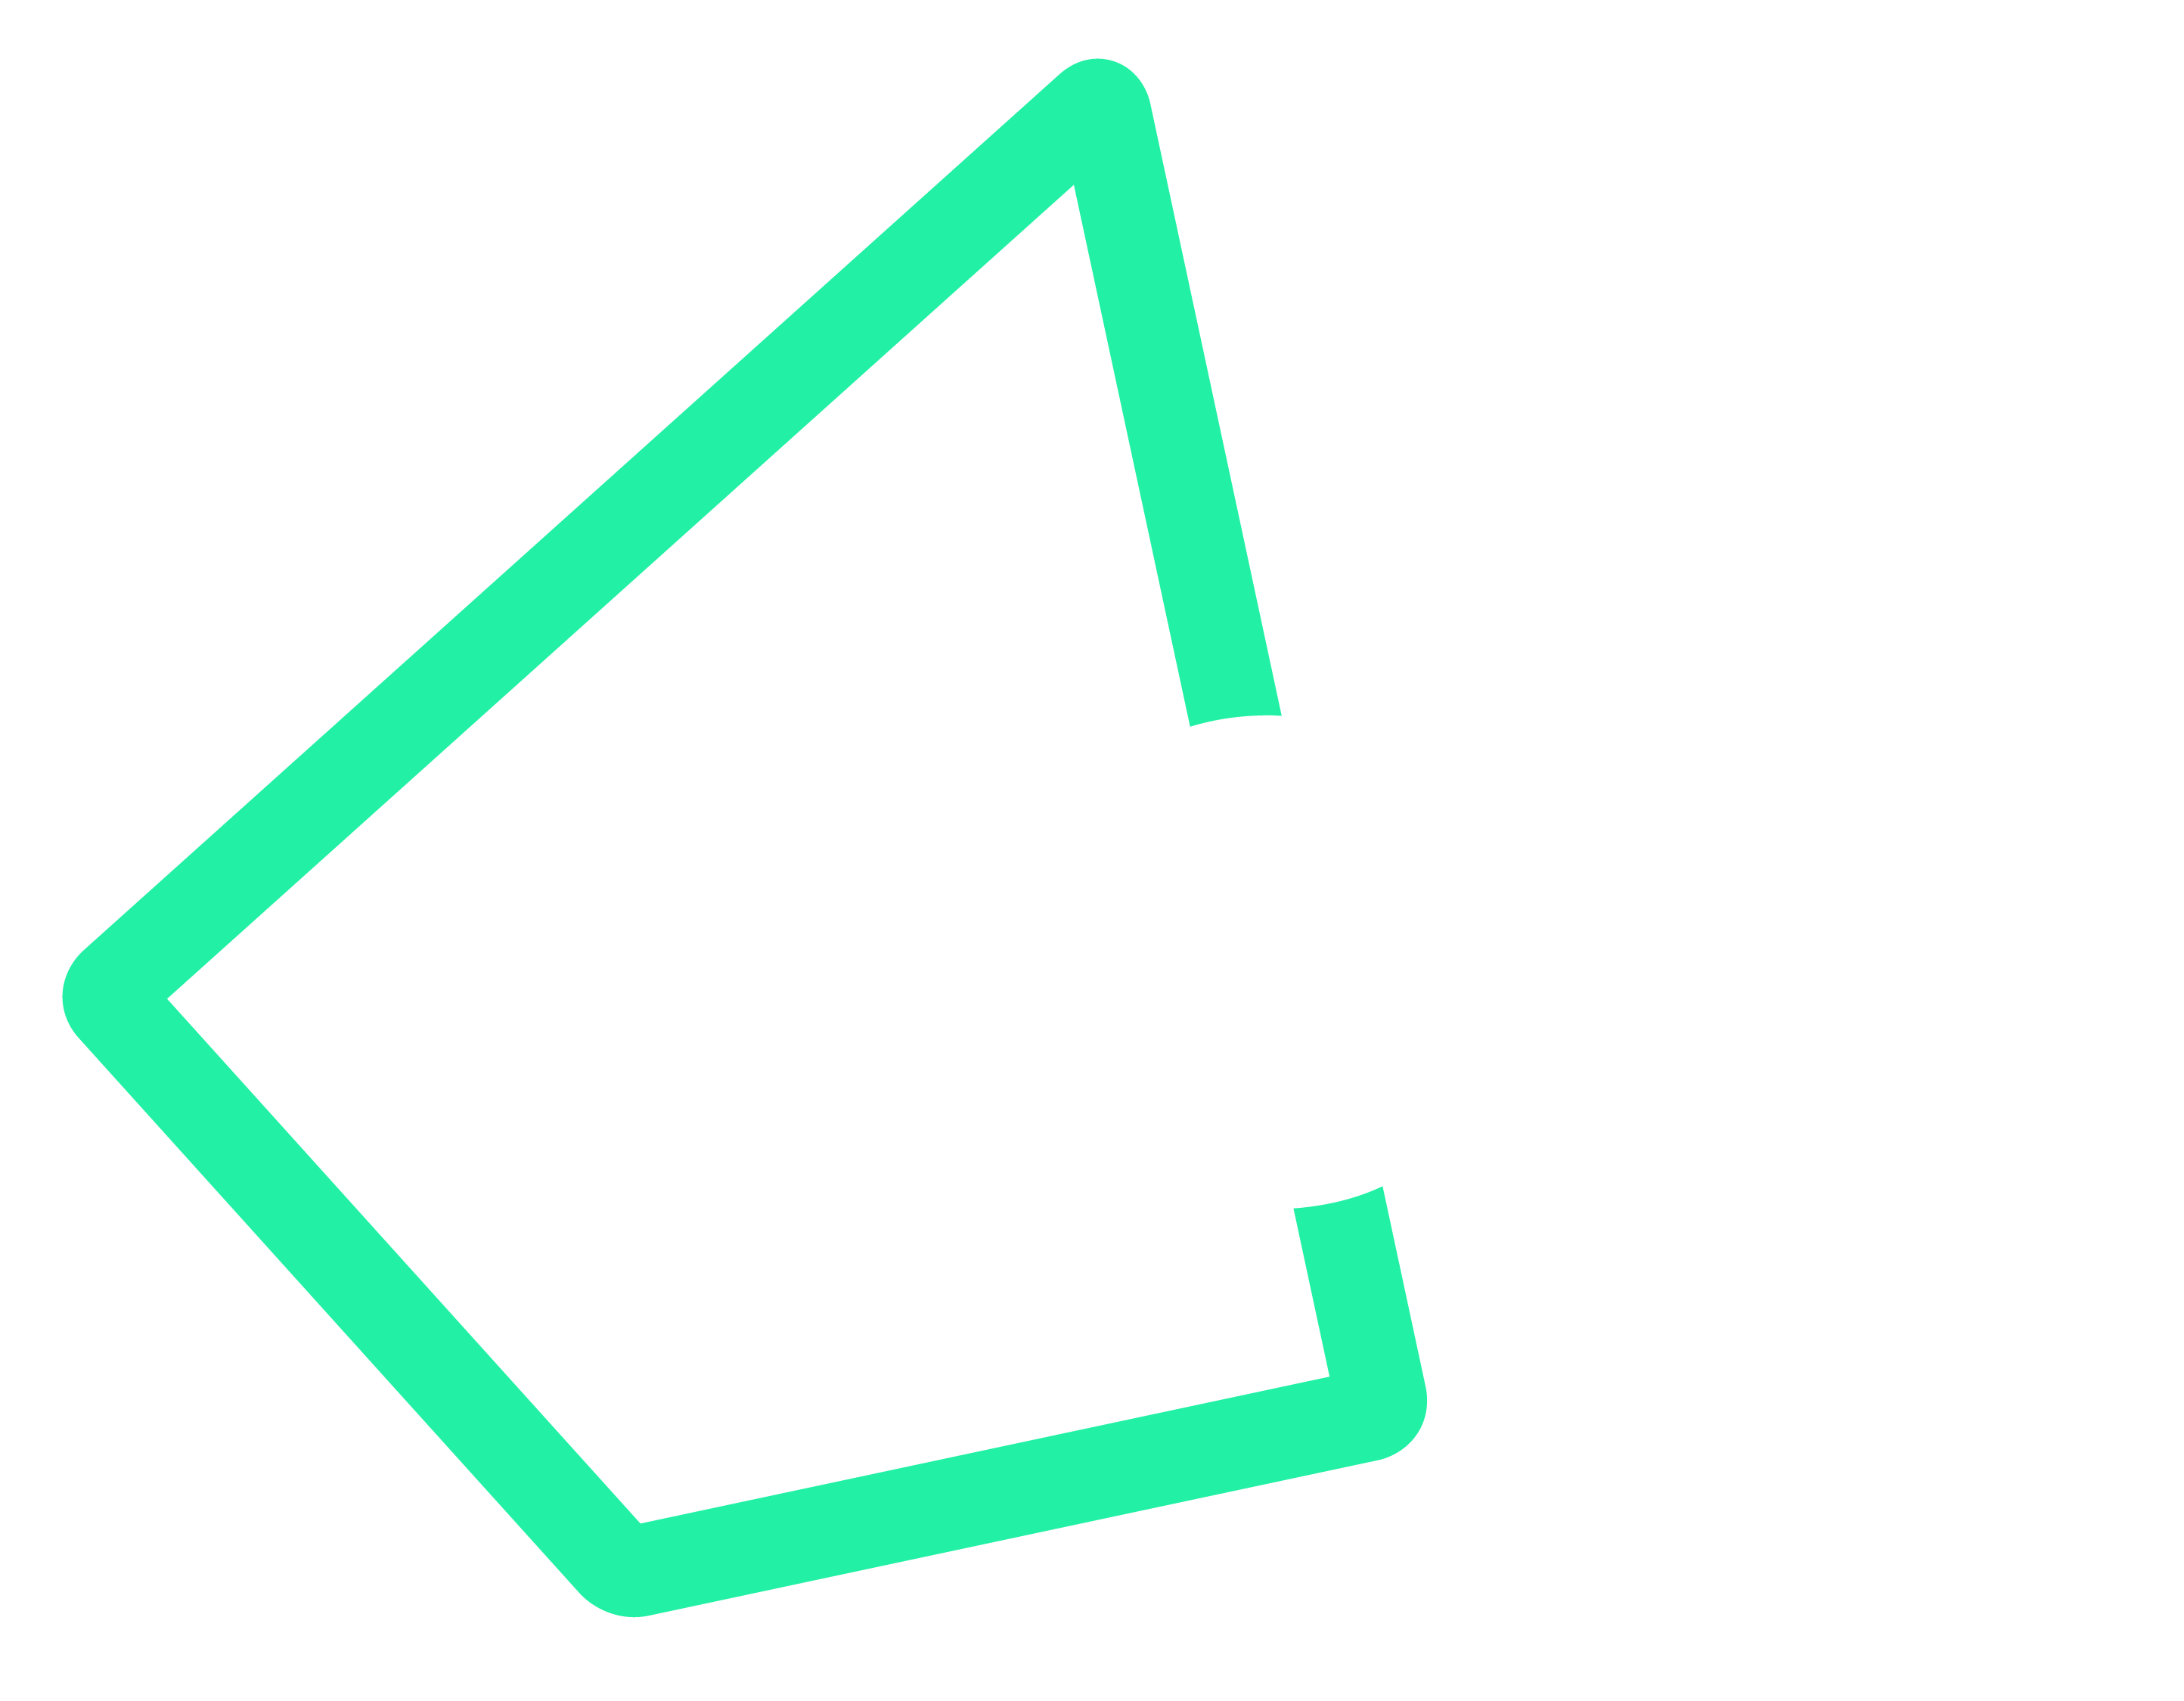 Iress